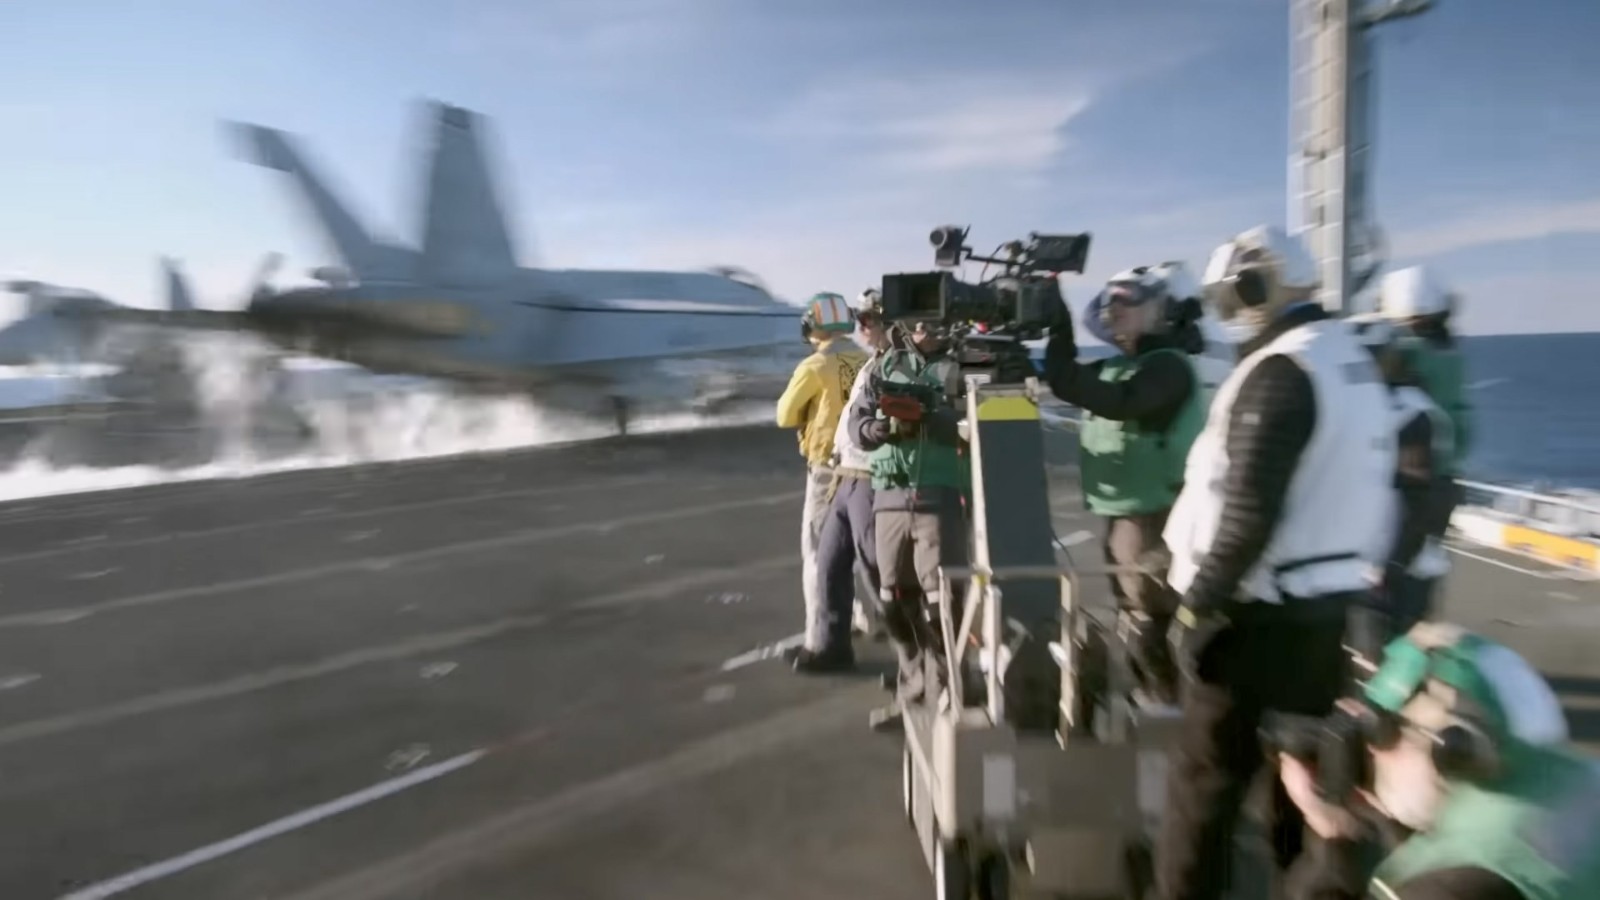 《壮志凌云2》幕后拍摄花絮 航母起降拍摄完整版